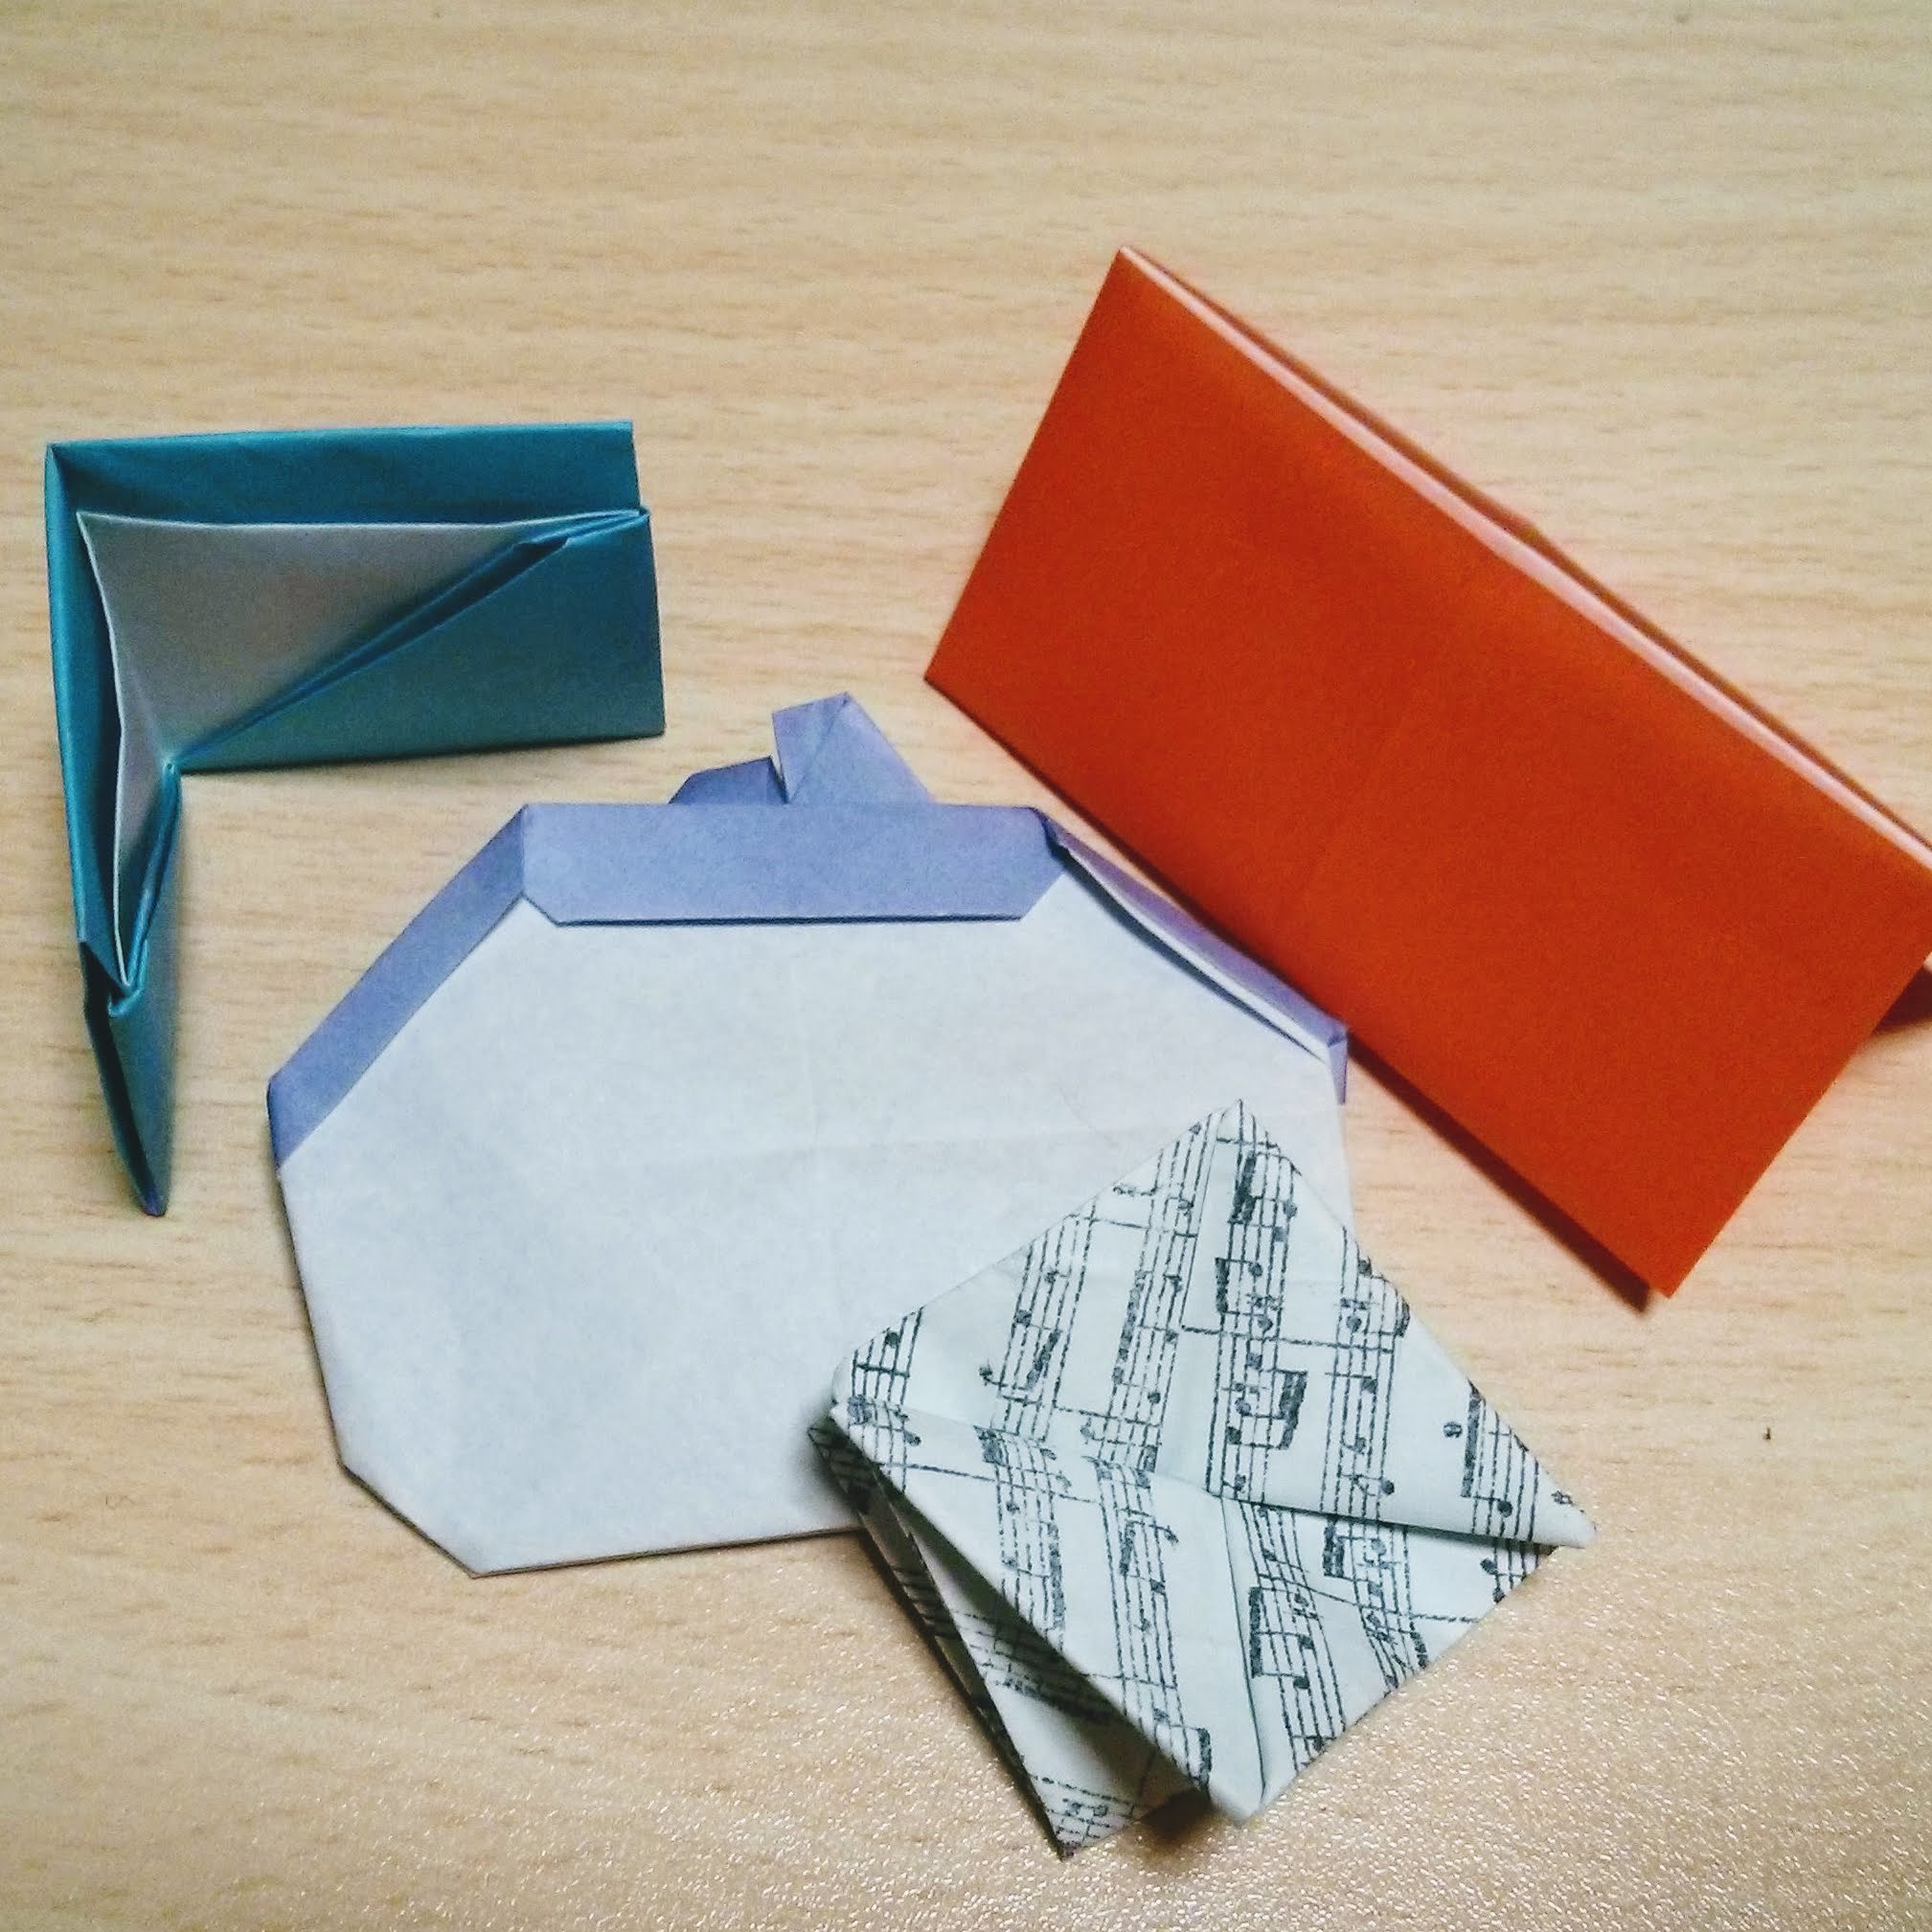 折り紙で簡単に作れる お財布の作り方8選 お札や小銭入れなど実用的な折り方も 暮らし の